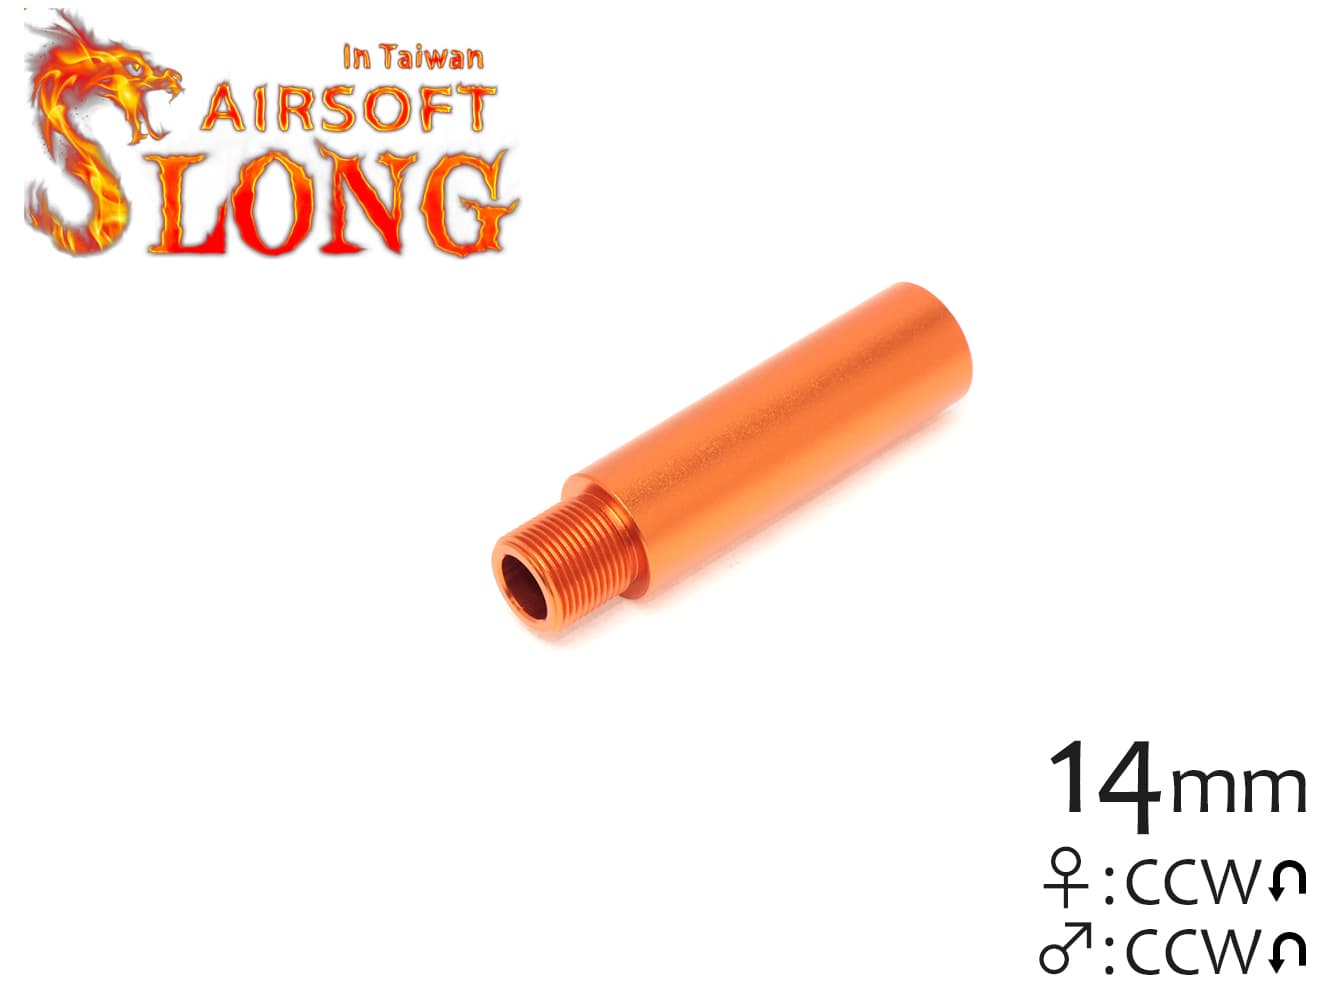 SLONG AIRSOFT 57mm アウターバレルエクステンション Φ18ストレート 14mm逆ネジ オレンジ